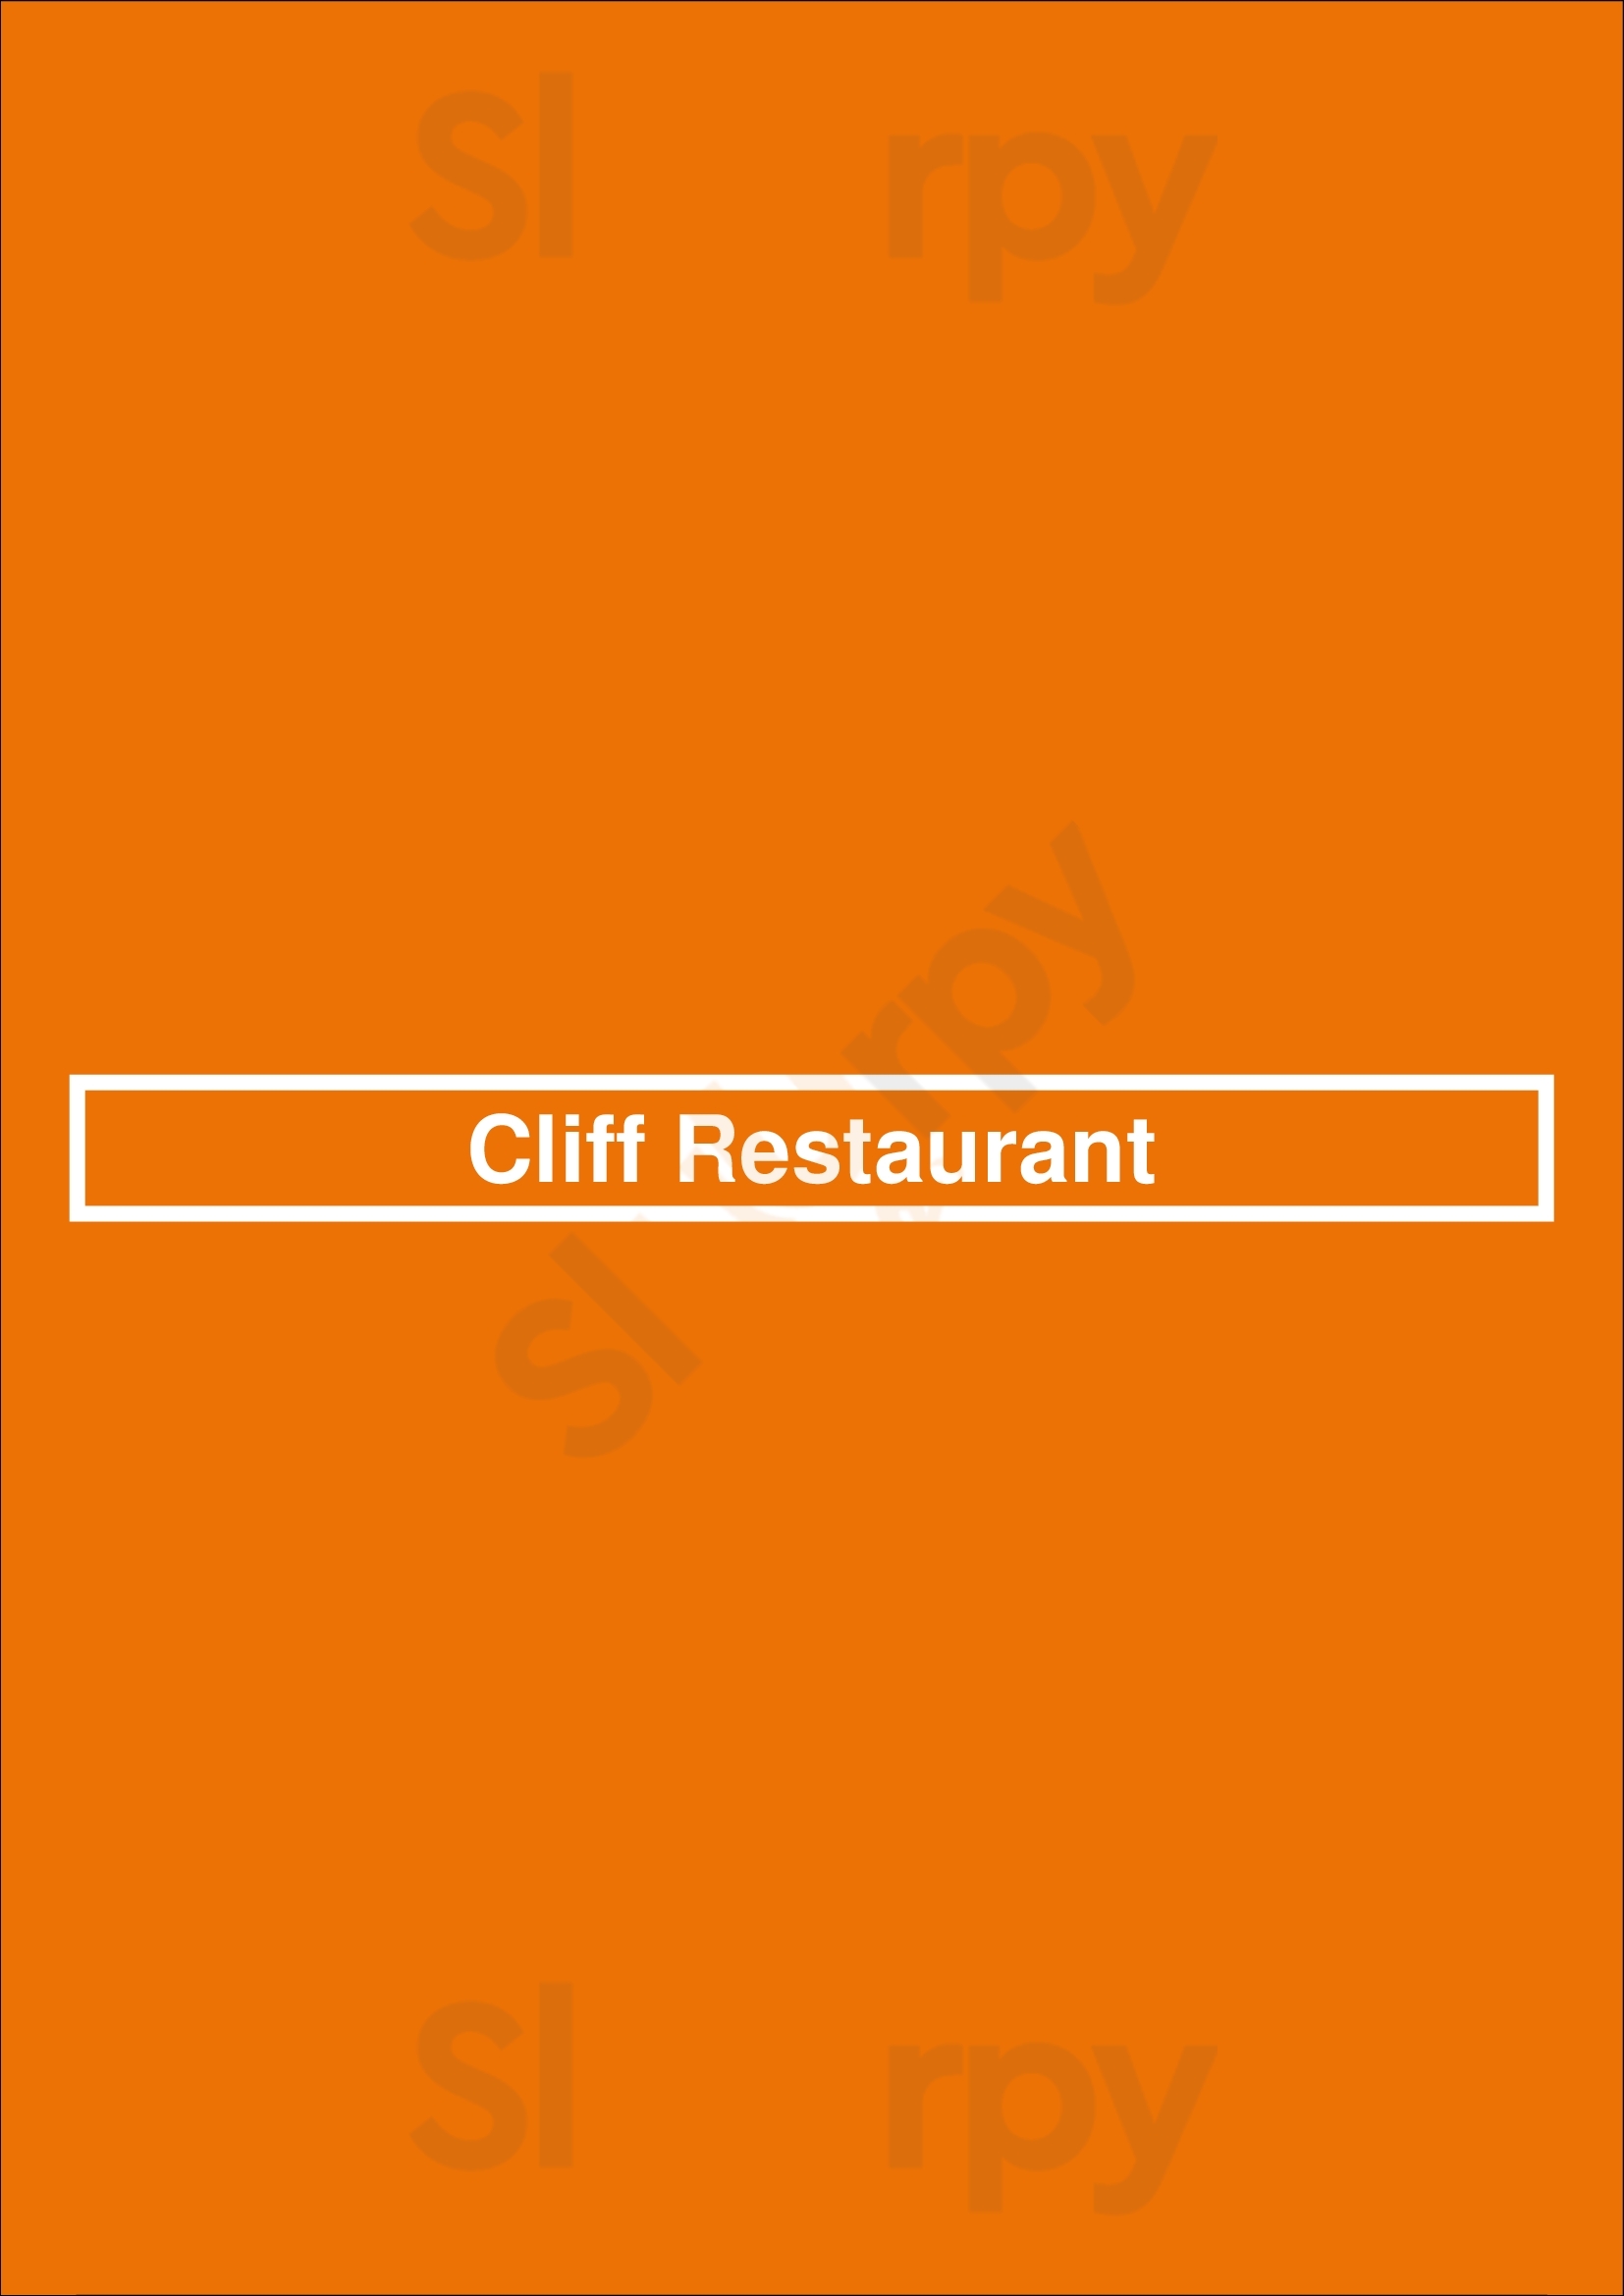 Cliff Restaurant Miami Menu - 1